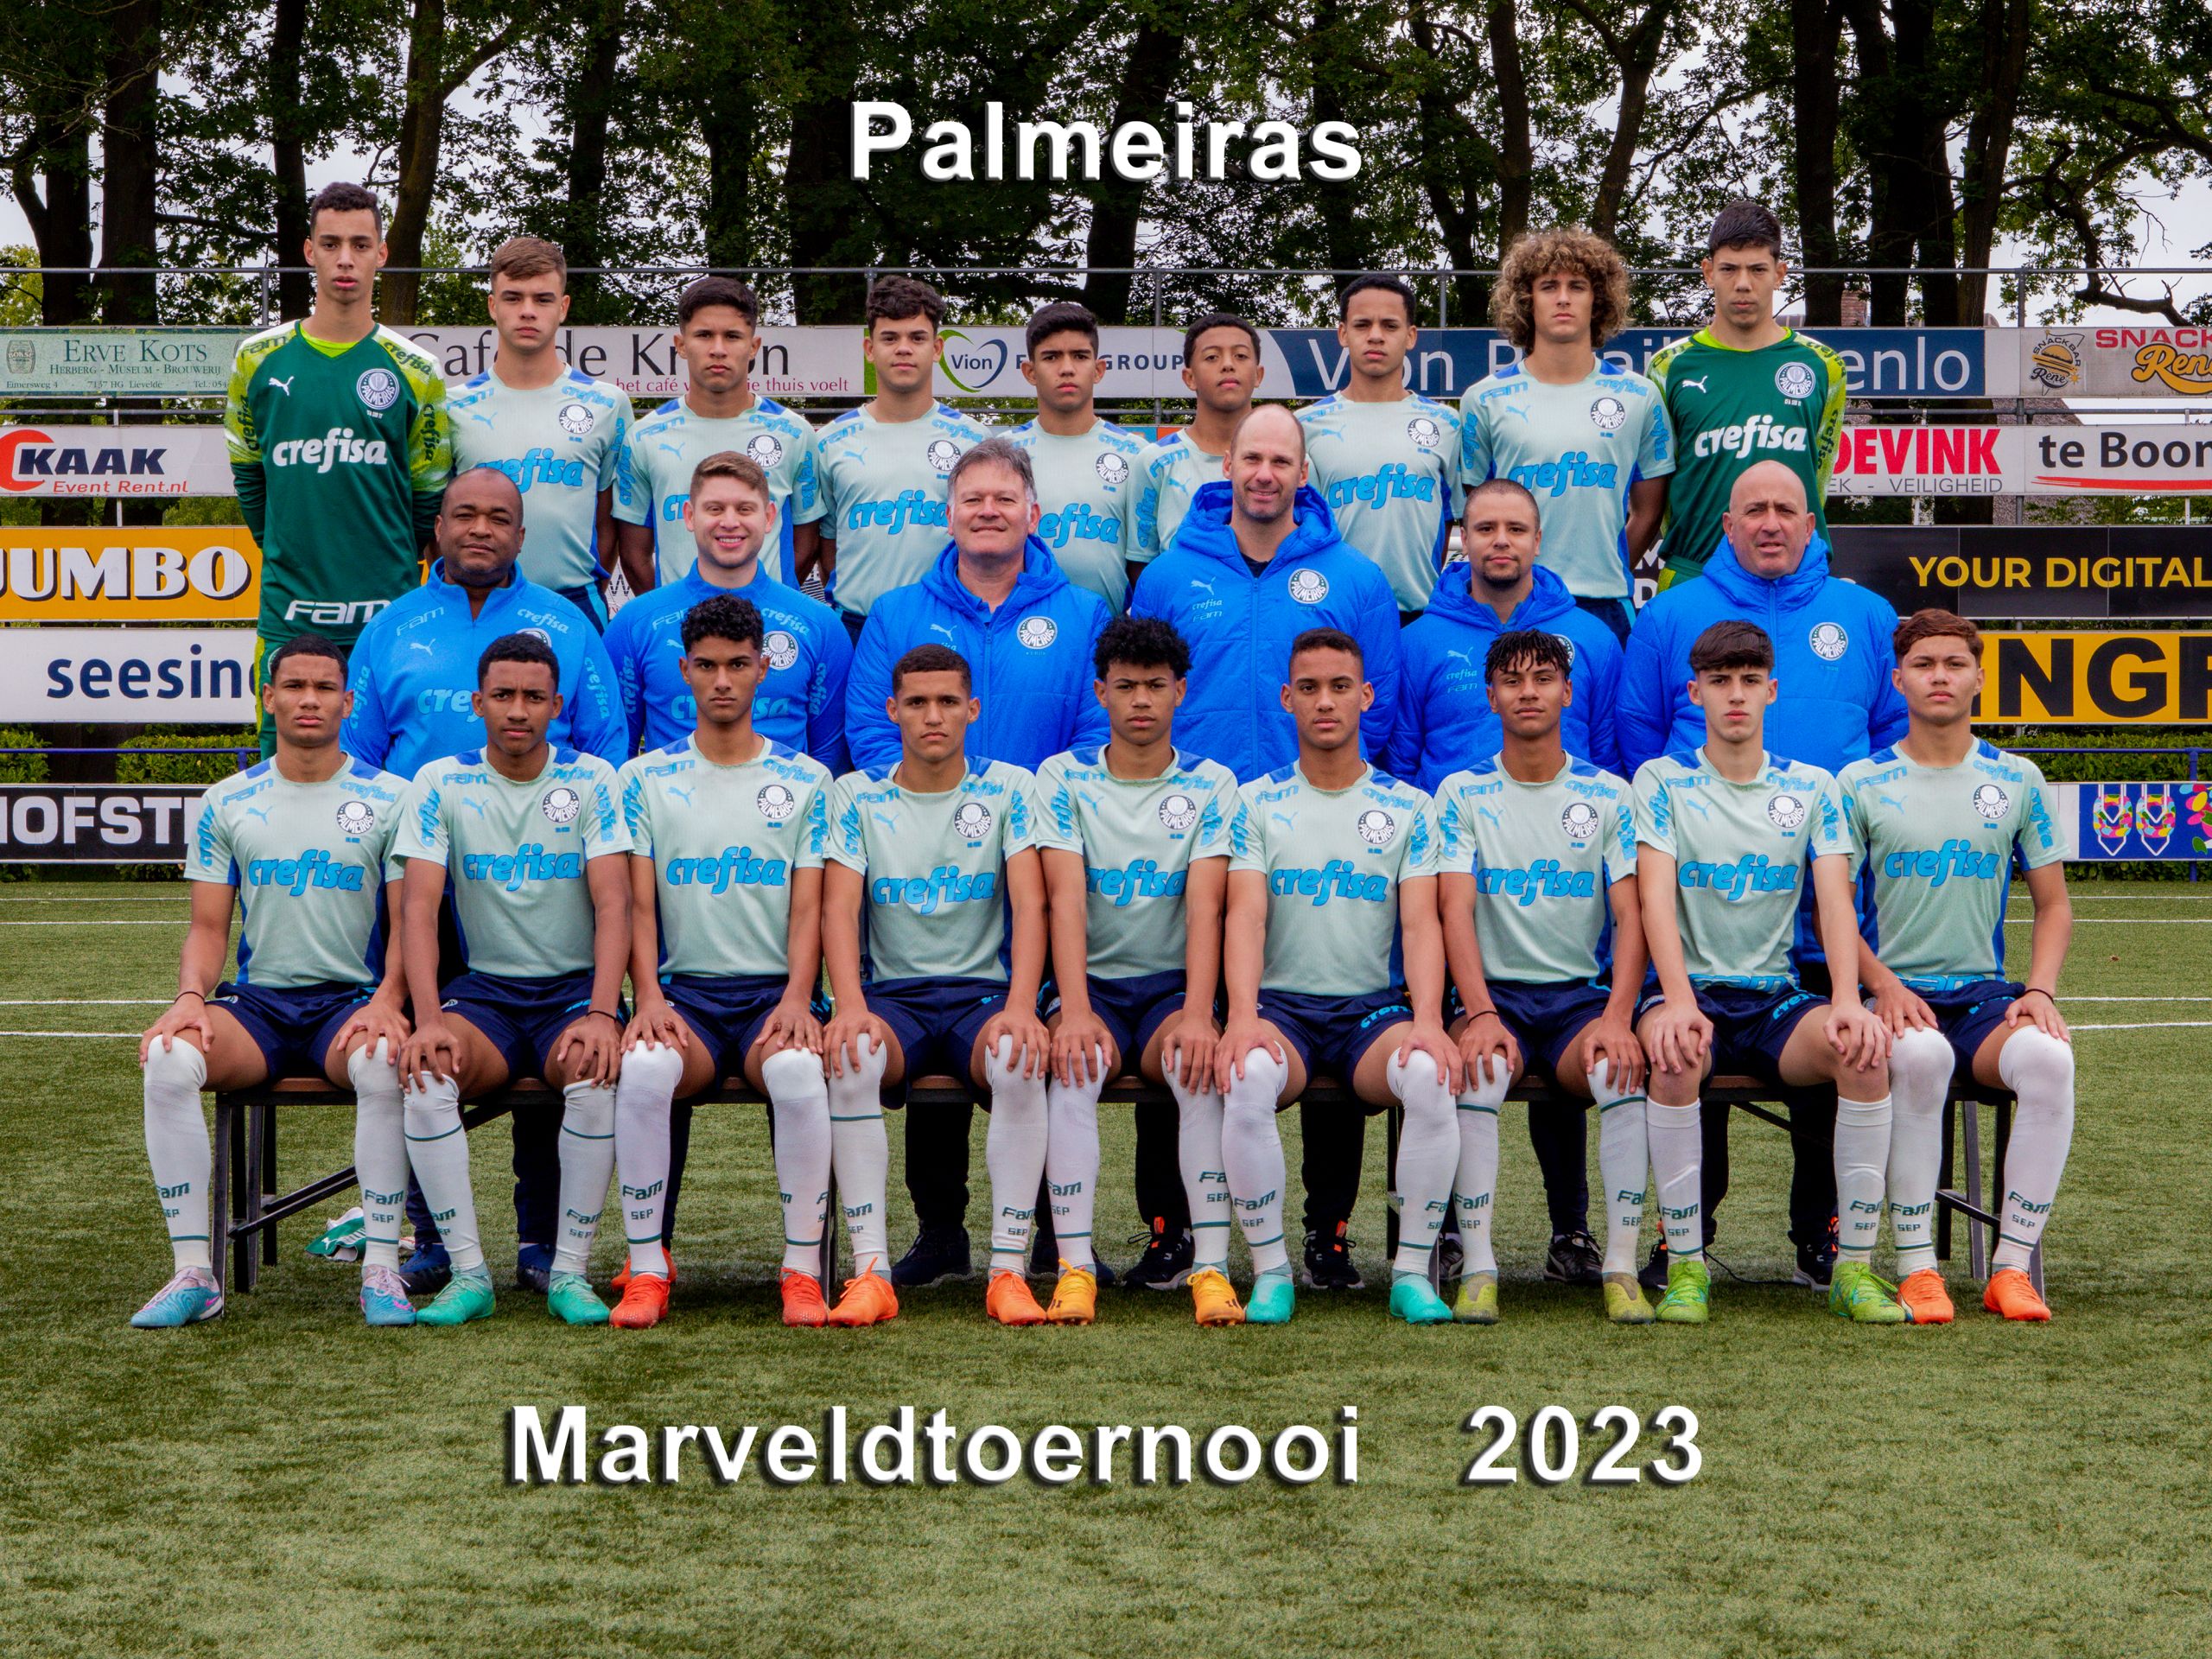 Marveld Tournament 2023 - Team Palmeiras